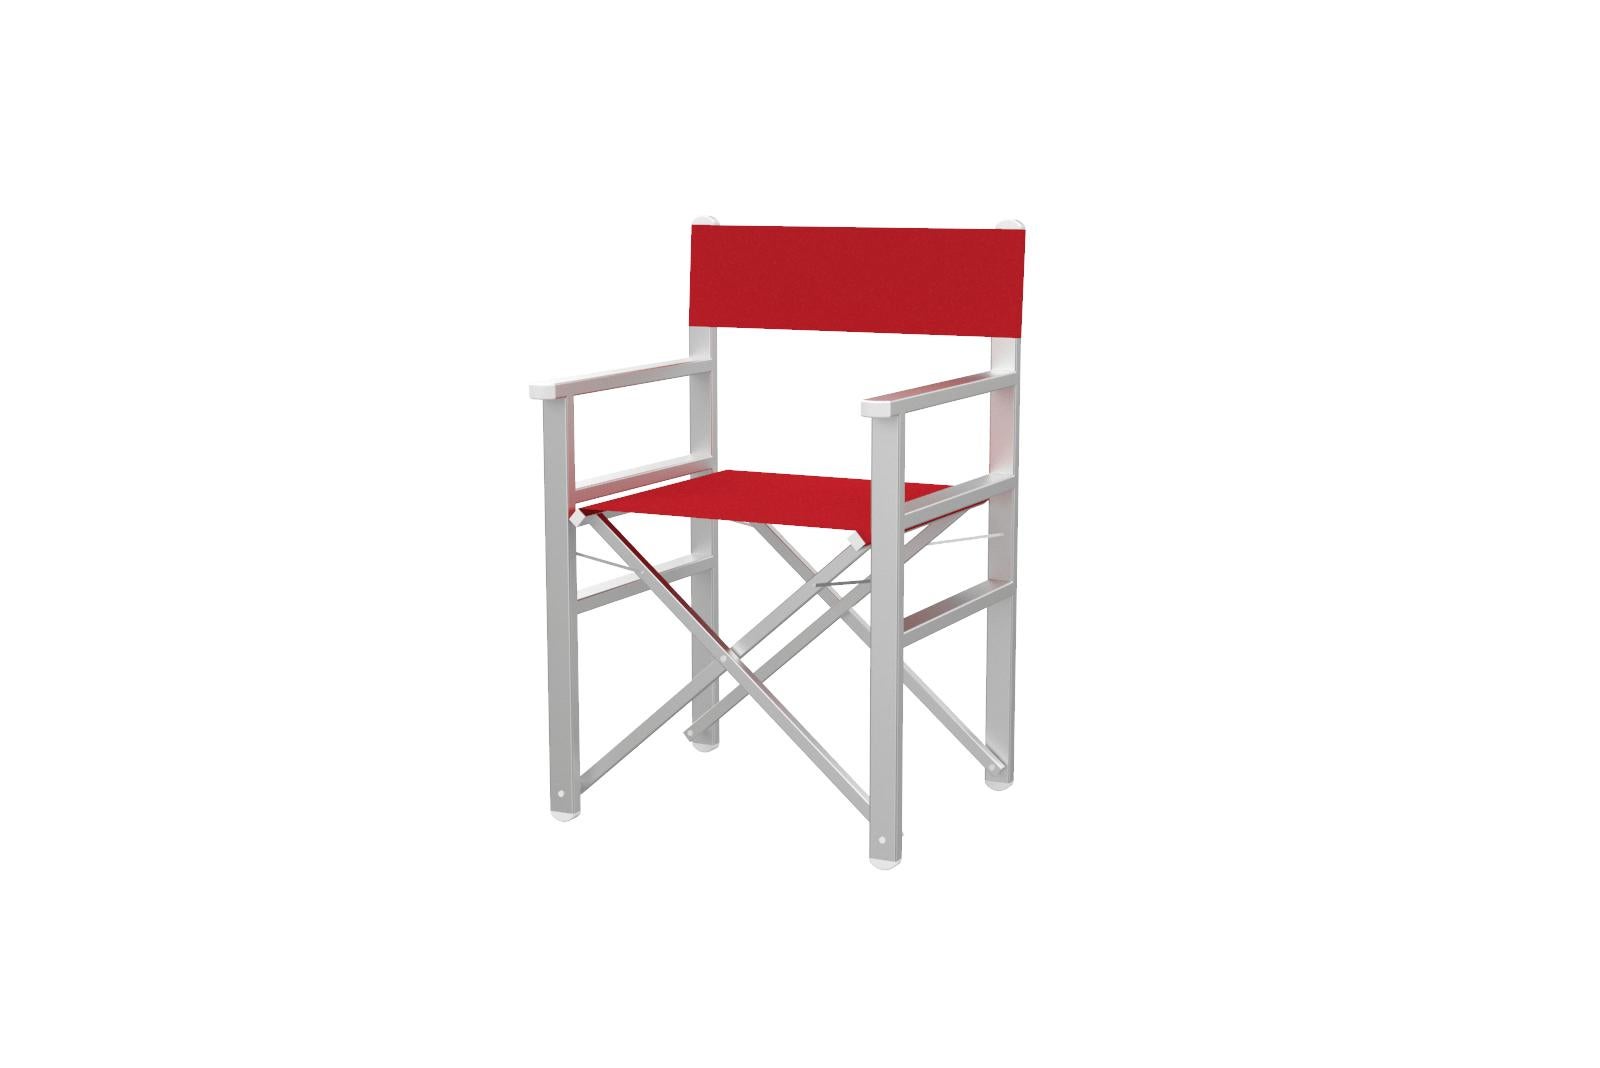 Calipso rot/weißer Regiestuhl für den Außenbereich
Auf Lager in Los Angeles

Faltbarer rot/weißer Aluminiumstuhl für den Außenbereich aus Aluminium, weiß pulverbeschichtet. Rahmen aus eloxiertem Aluminium, Schrauben und Muttern aus rostfreiem